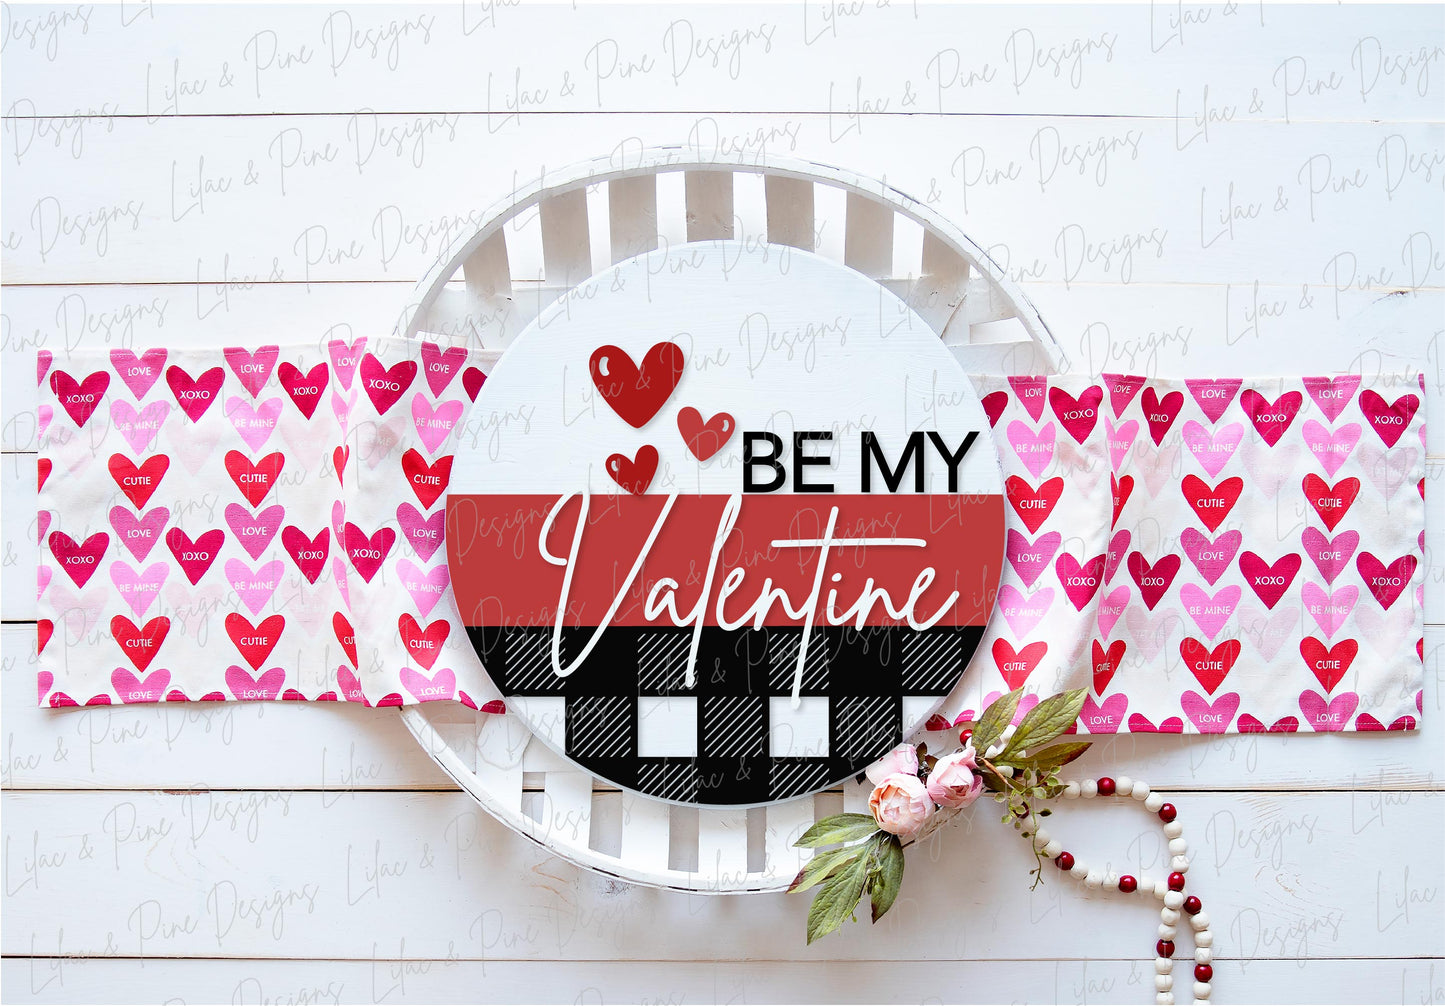 Be My Valentine SVG, Valentine plaid door round SVG, laser cut file